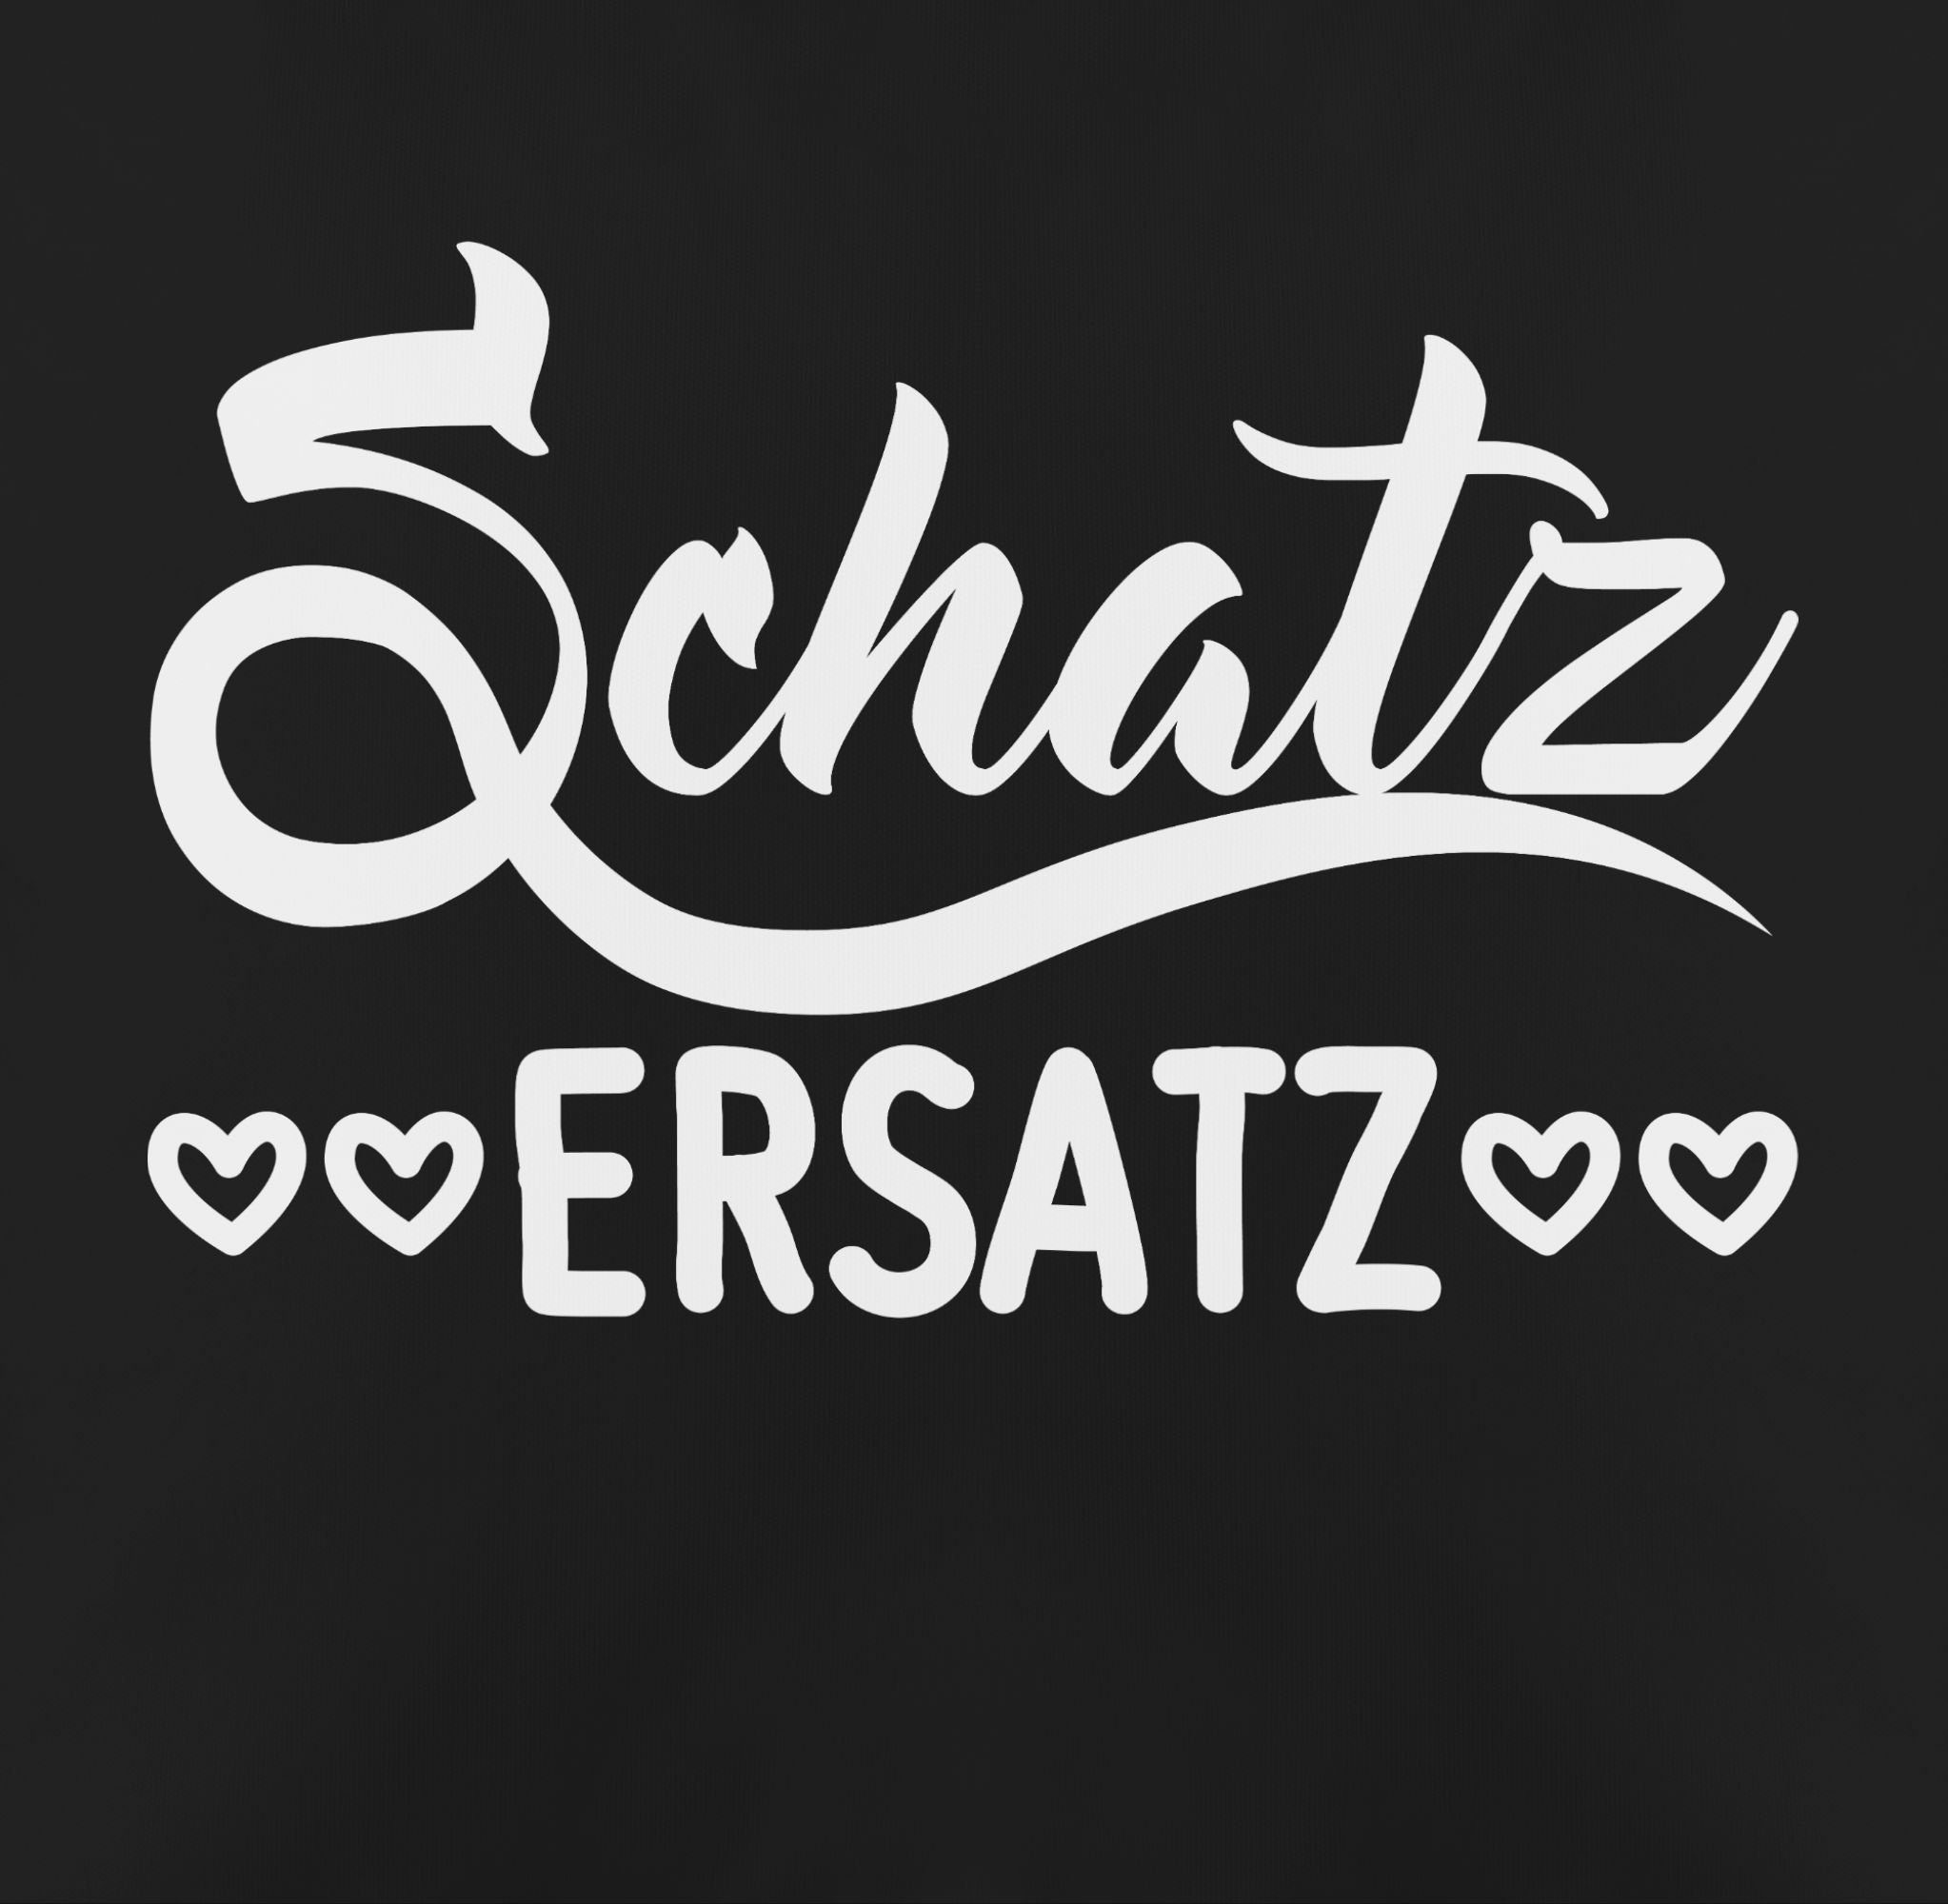 Shirtracer Dekokissen Schatzersatz - Geschenk 2 für Frauen Dekokissen Ersatz Valentinstag Schwarz für Geschenk Geschenke Männer, Schatz